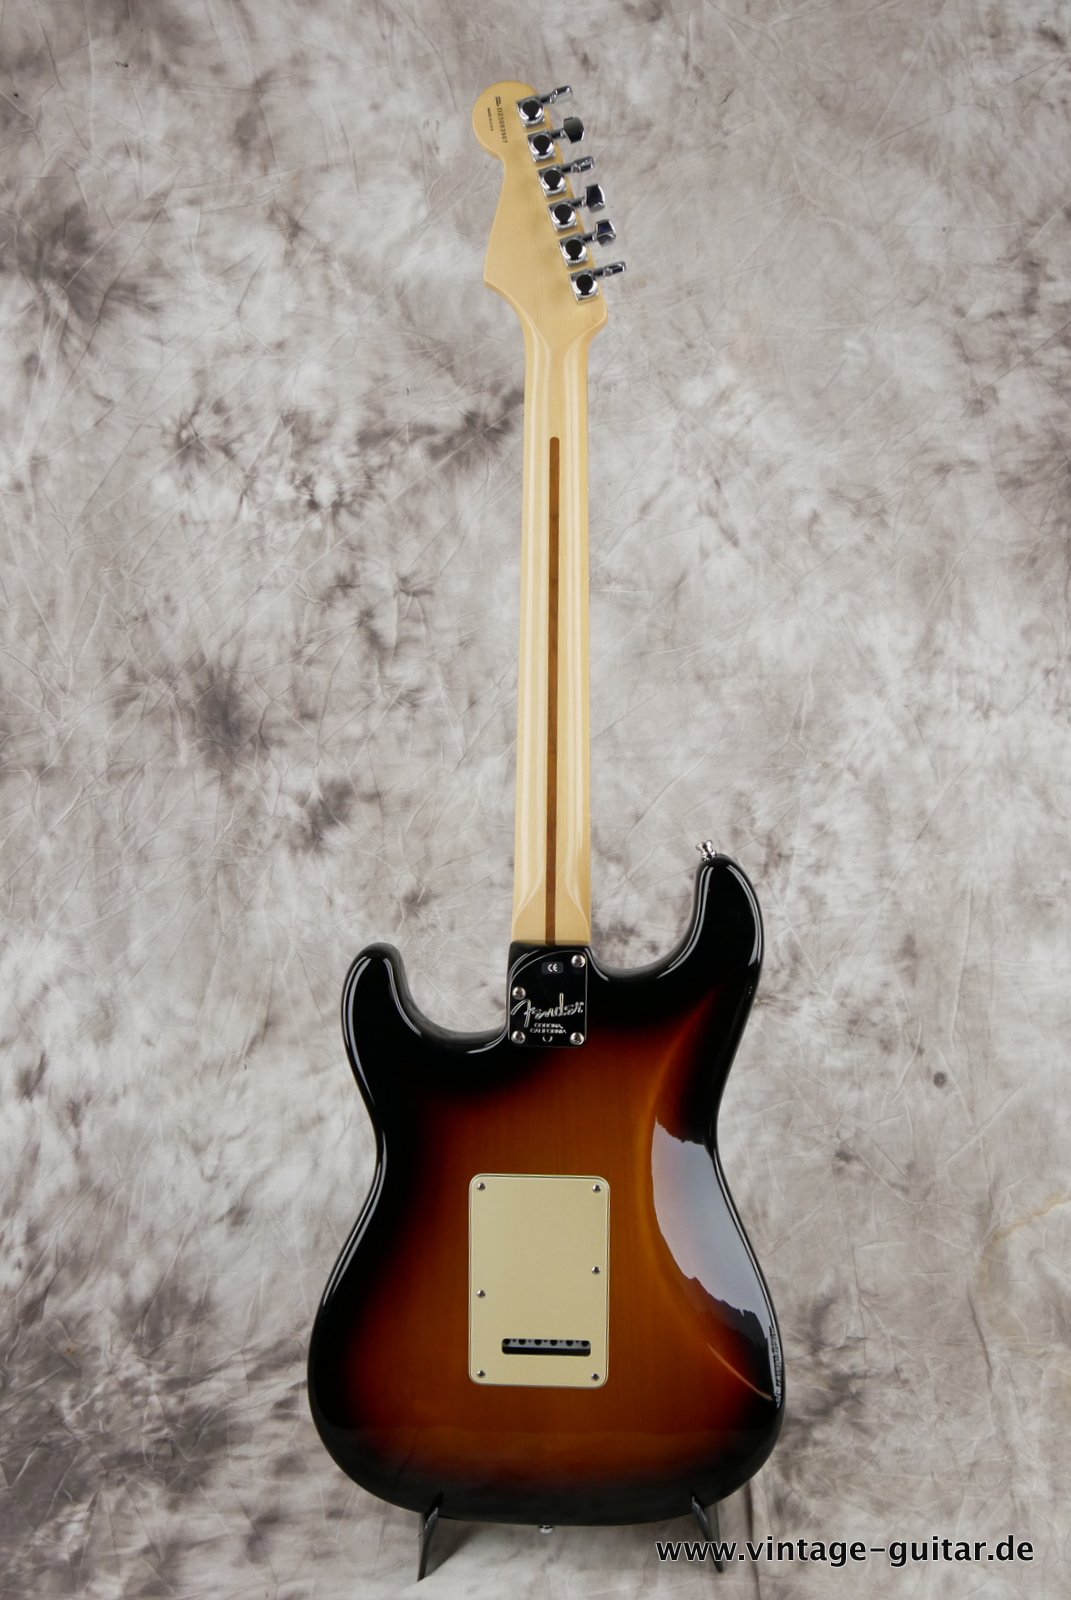 Fender_Startocaster_American_Deluxe_sunburst_samarium-cobalt-noiseless_tremolo_2005-002.JPG